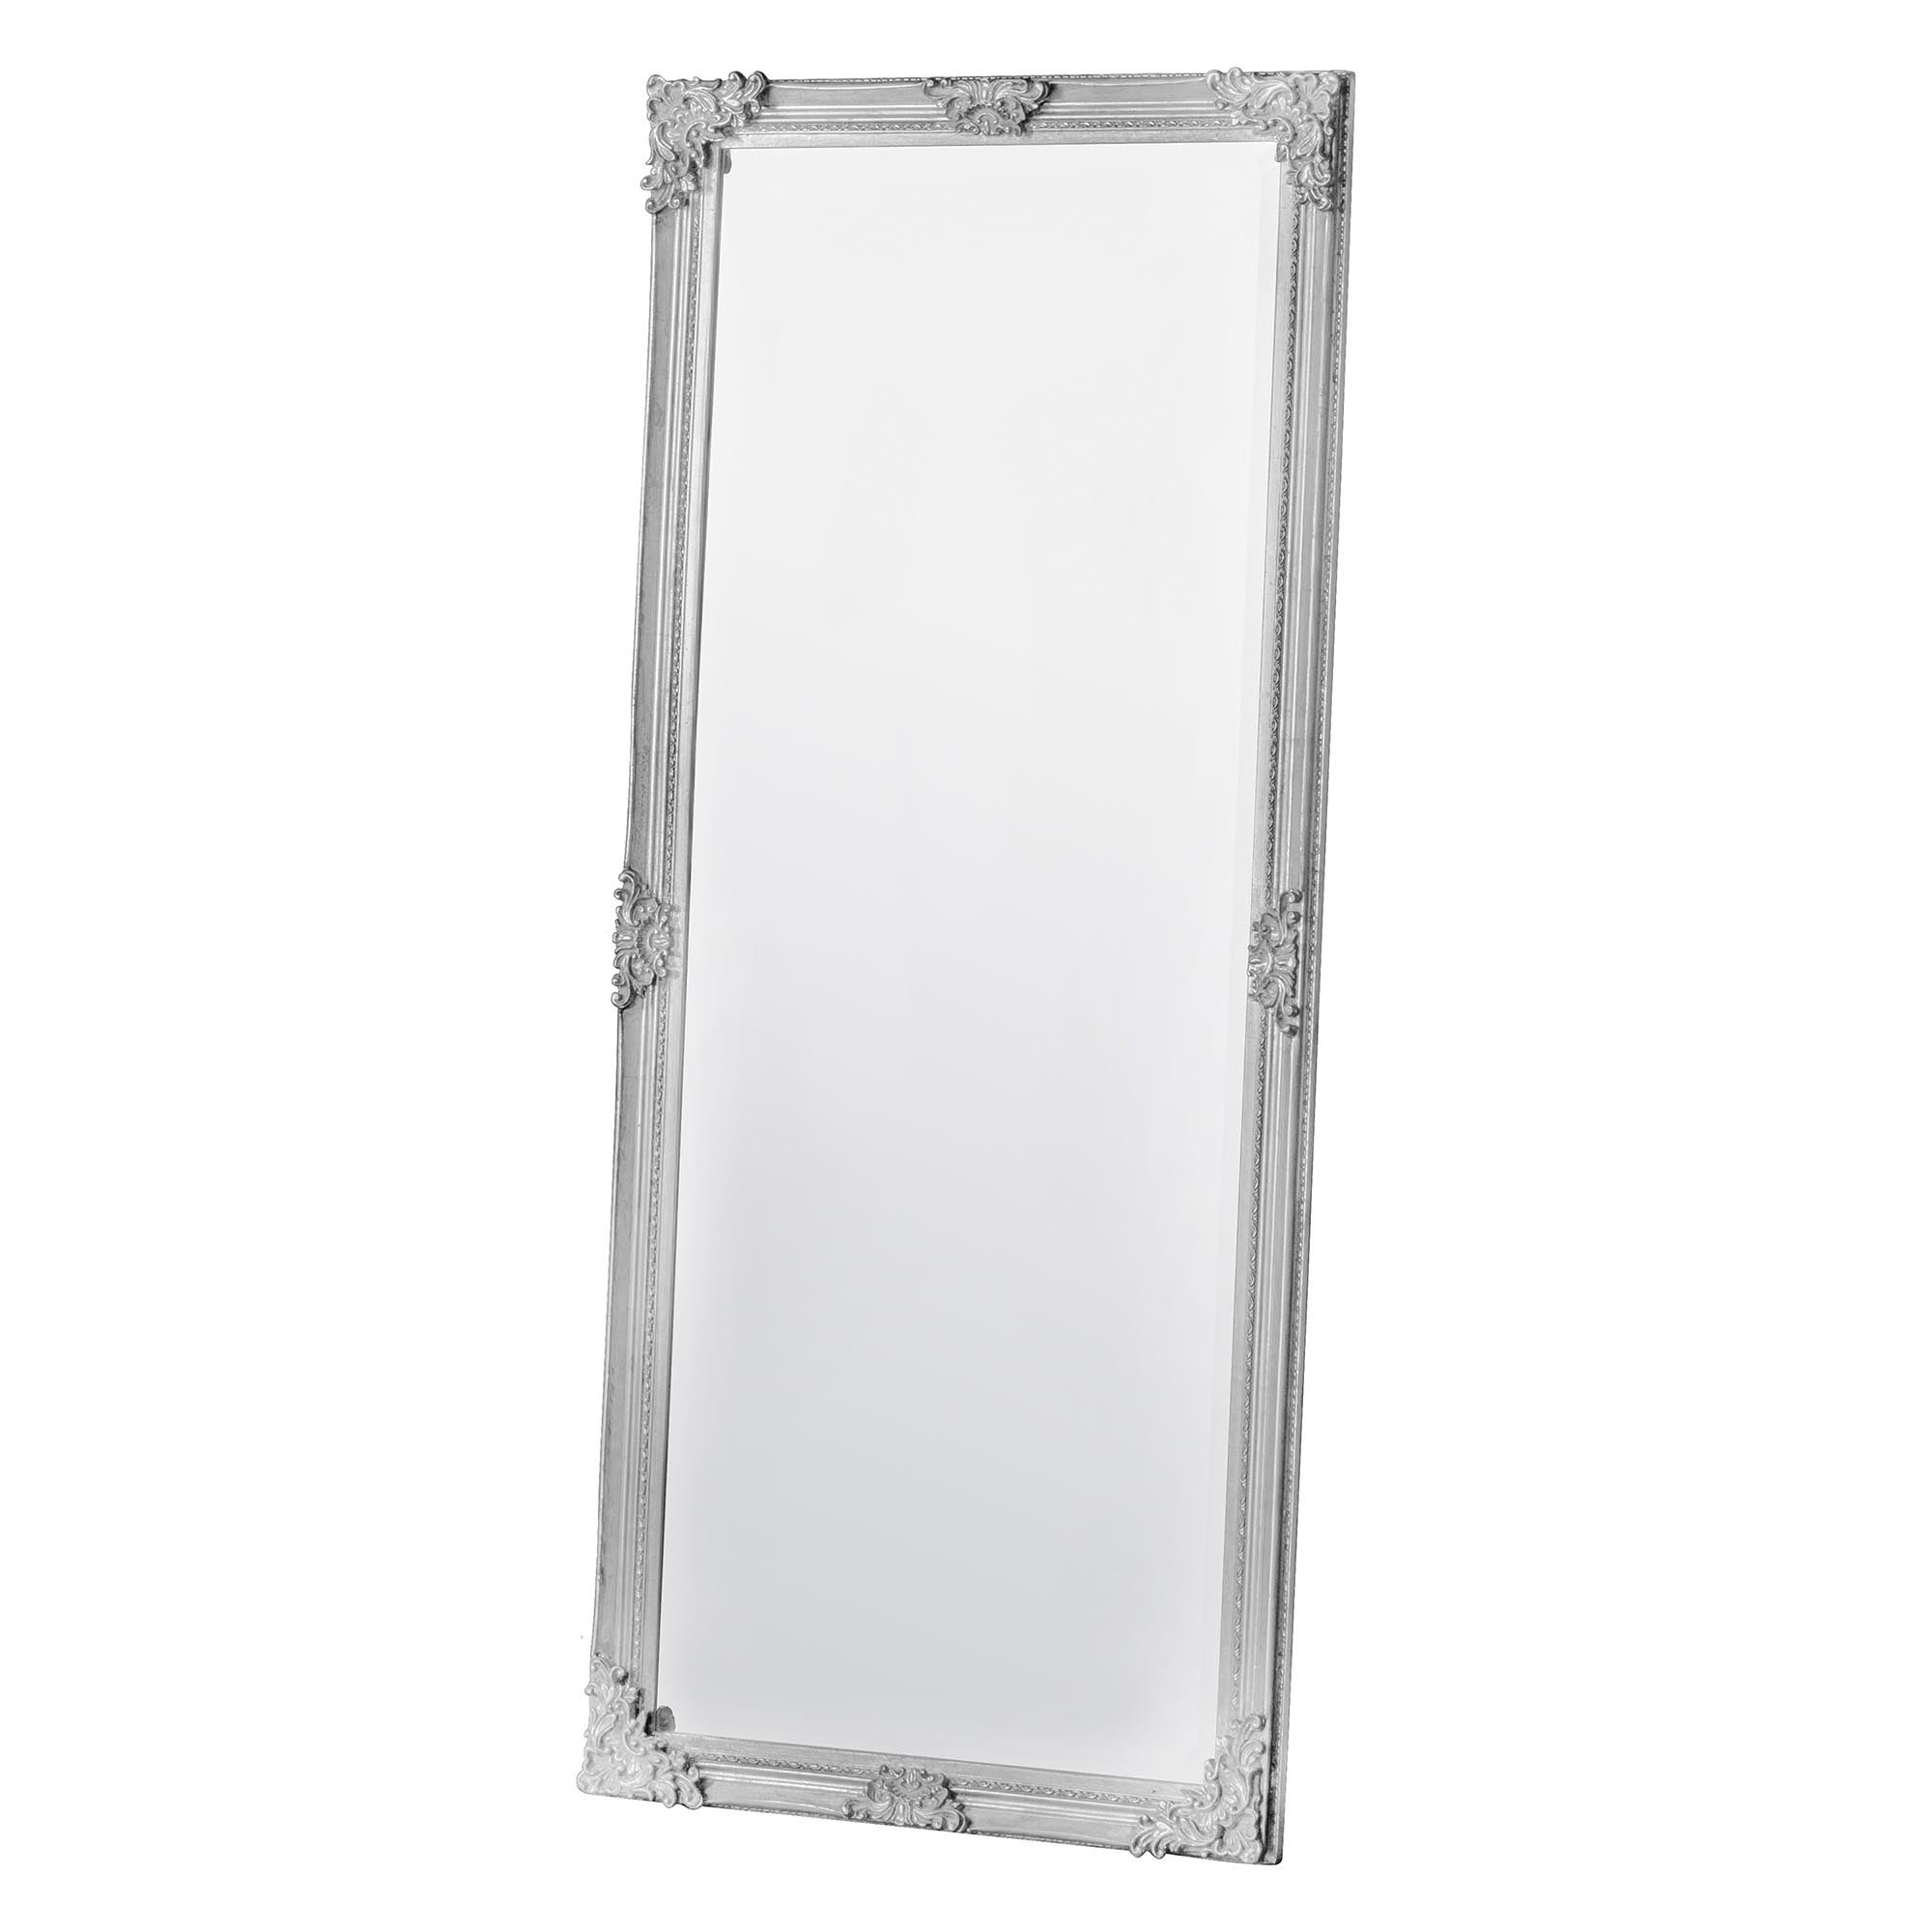 Rociada Leaner Mirror 70x160cm White